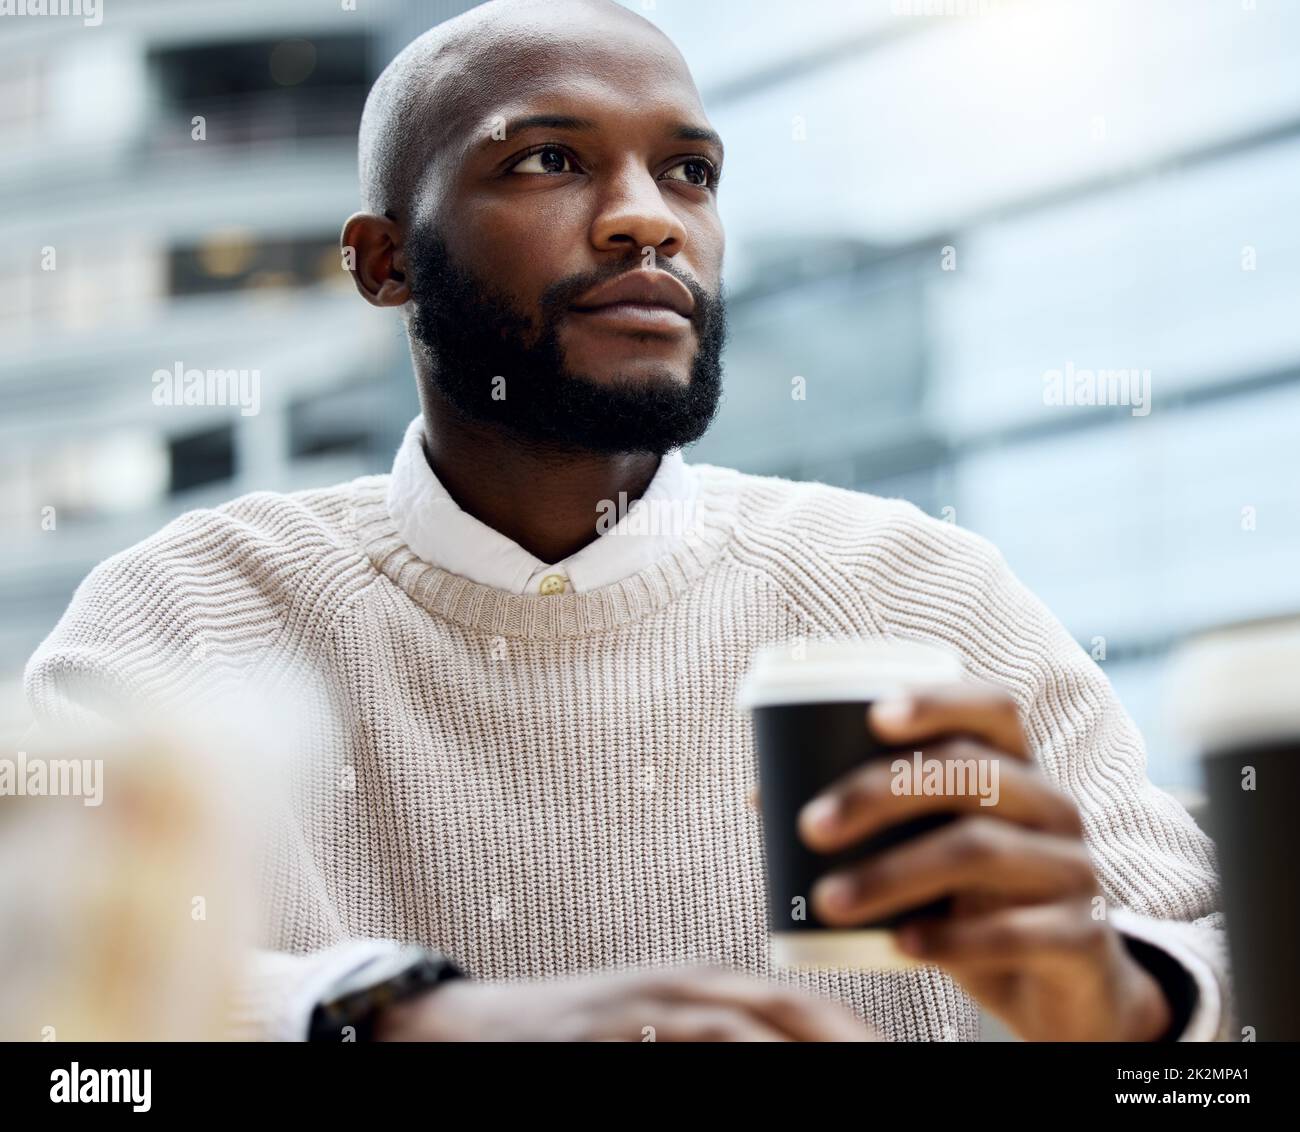 Le café suscite toutes les pensées ambitieuses. Photo d'un jeune homme d'affaires qui a l'air attentionné tout en buvant un café à l'extérieur d'un bureau. Banque D'Images